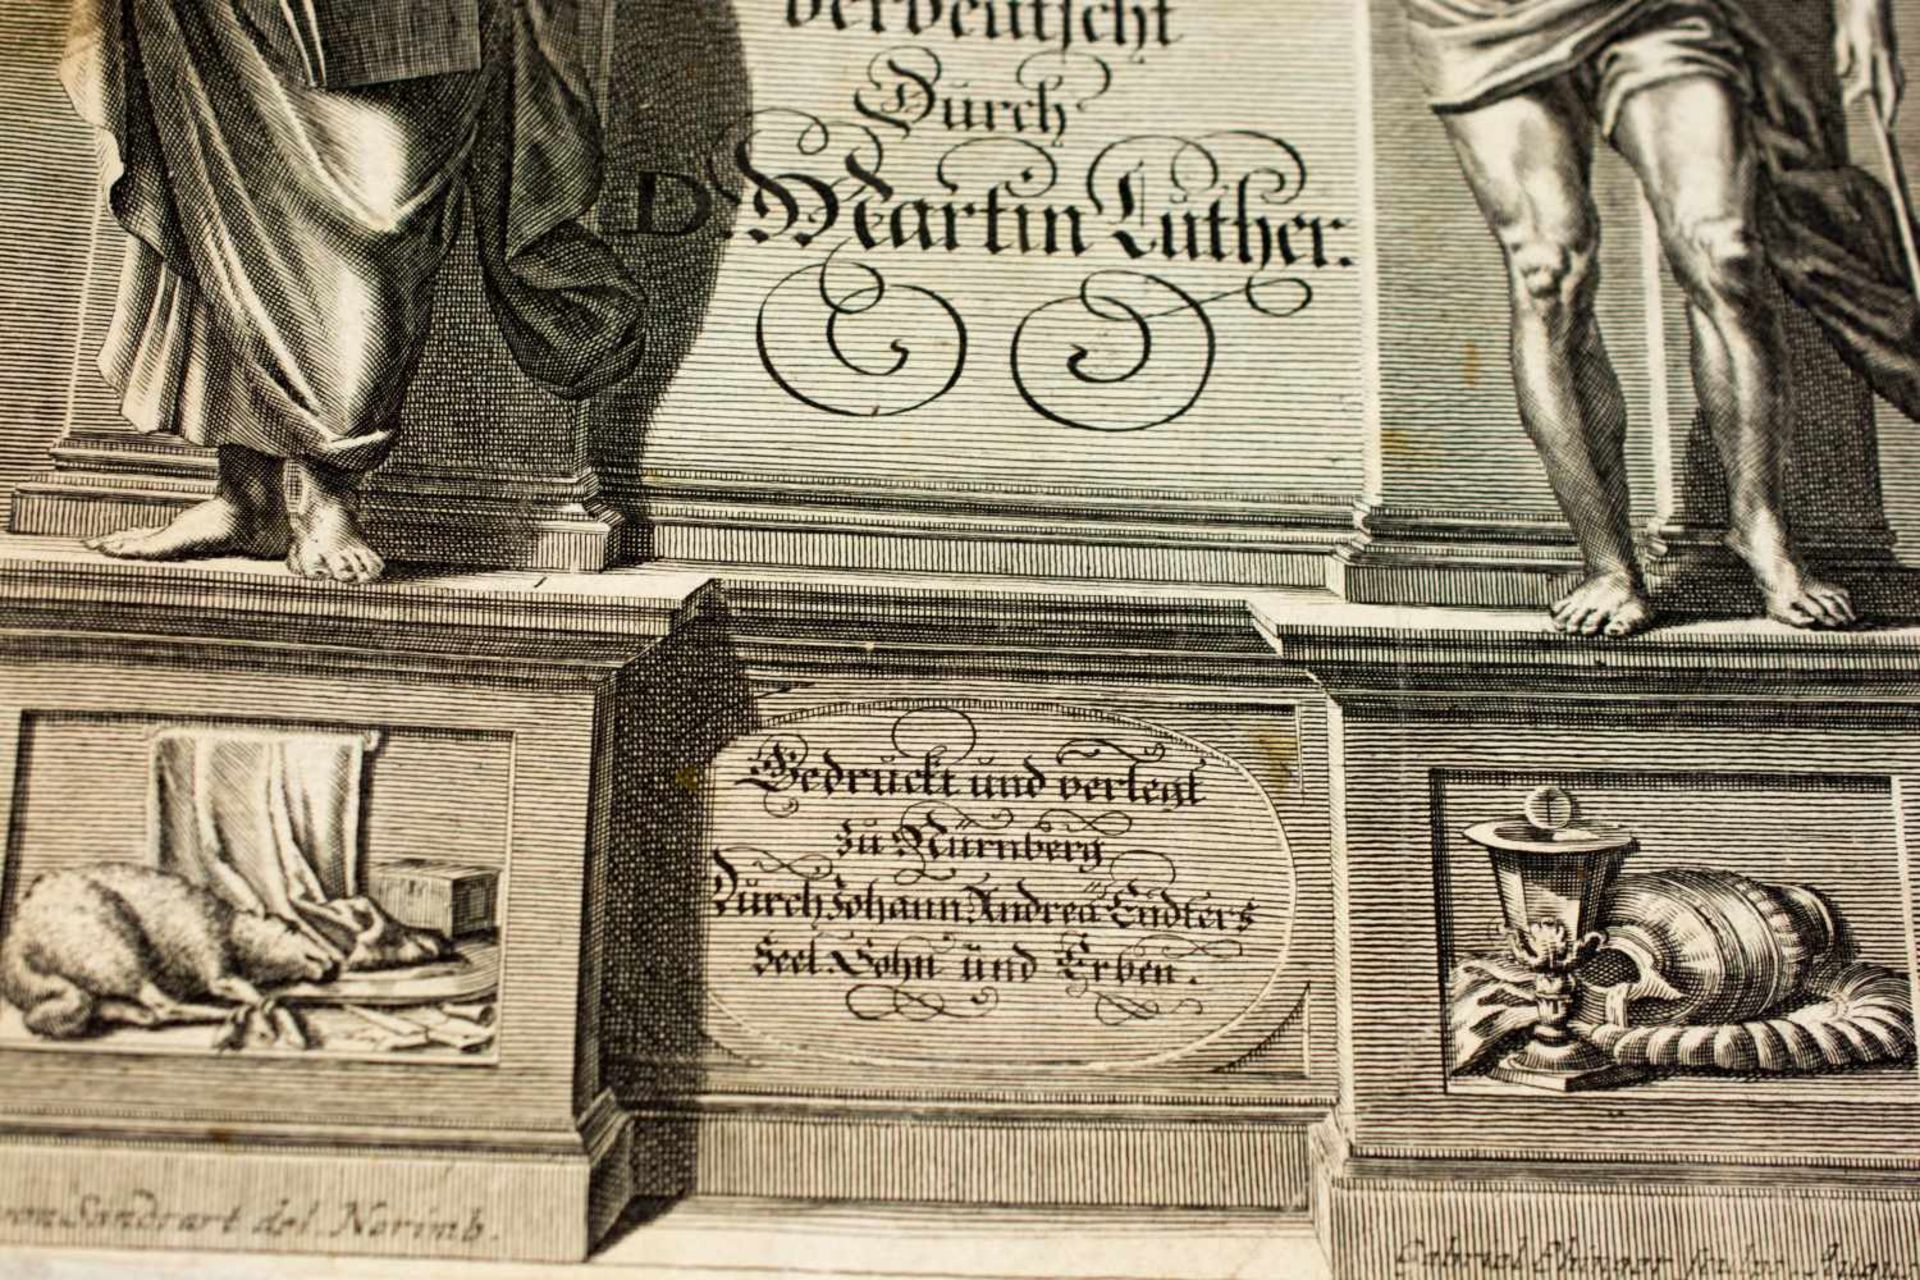 Bibel Das ist die ganze heilige Schrift verdeutlicht durch Martin Luther, 17. Jh., Johann Andrea - Image 3 of 4